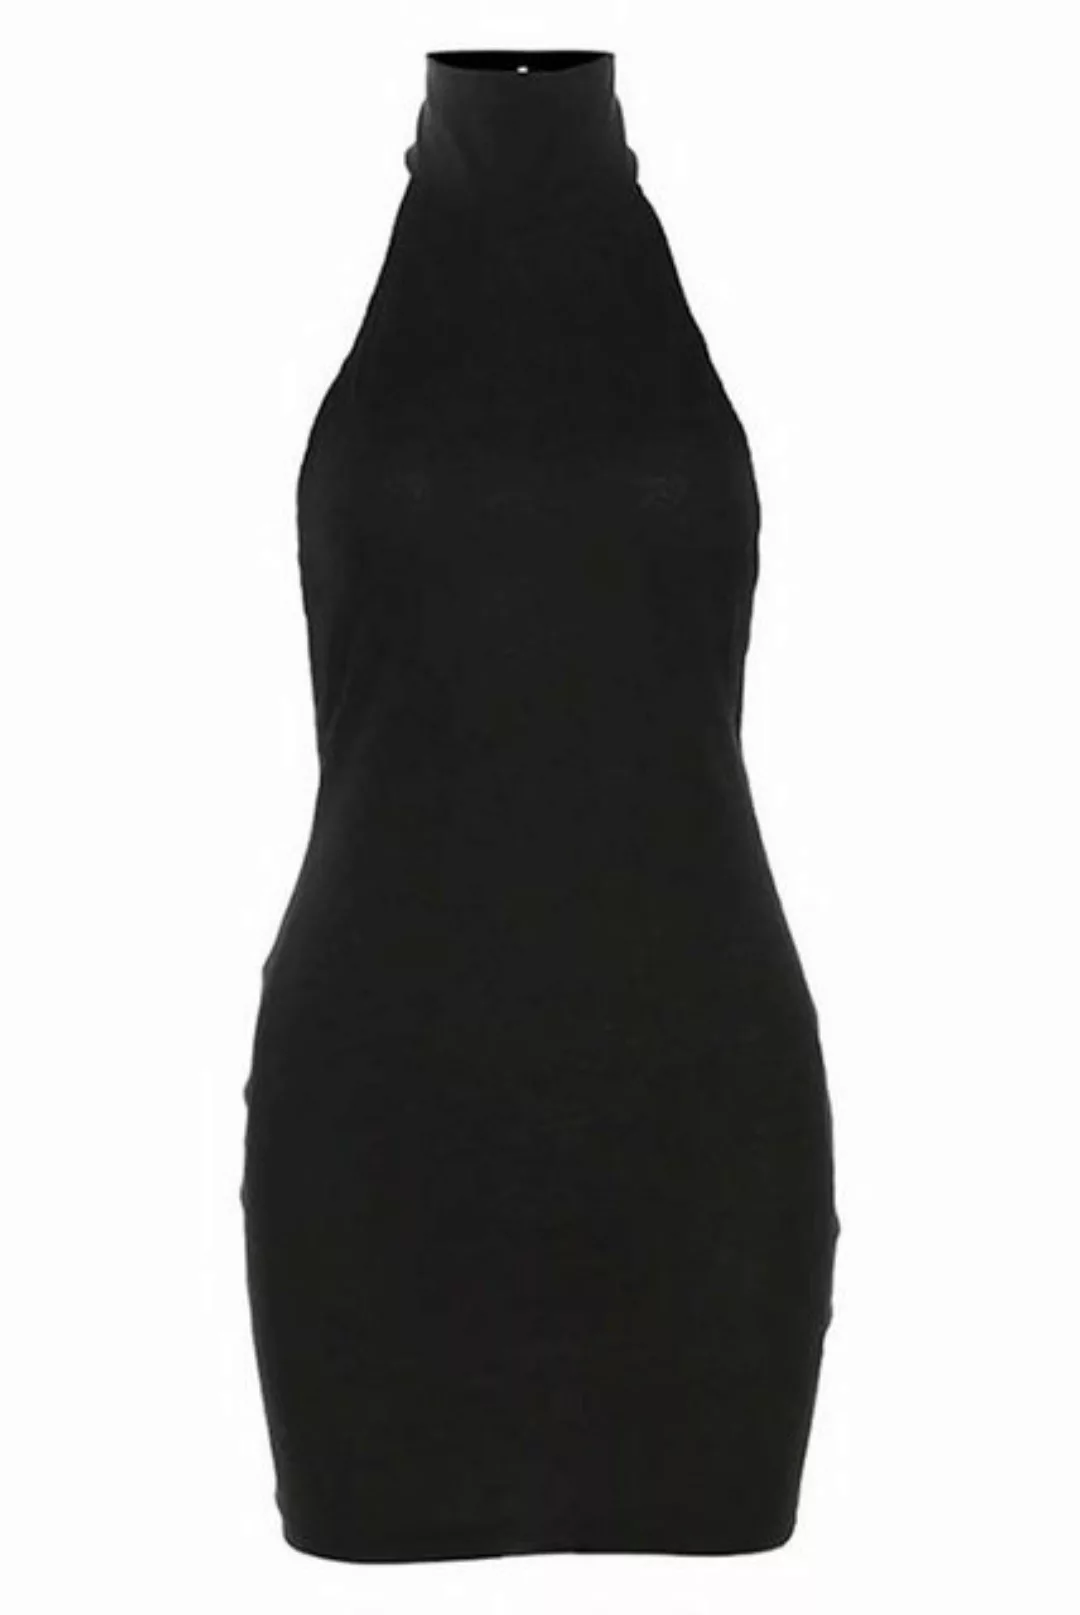 ZWY Dirndl Neckholder-Kleid mit schmaler Passform und rückenfreiem Schnitt günstig online kaufen